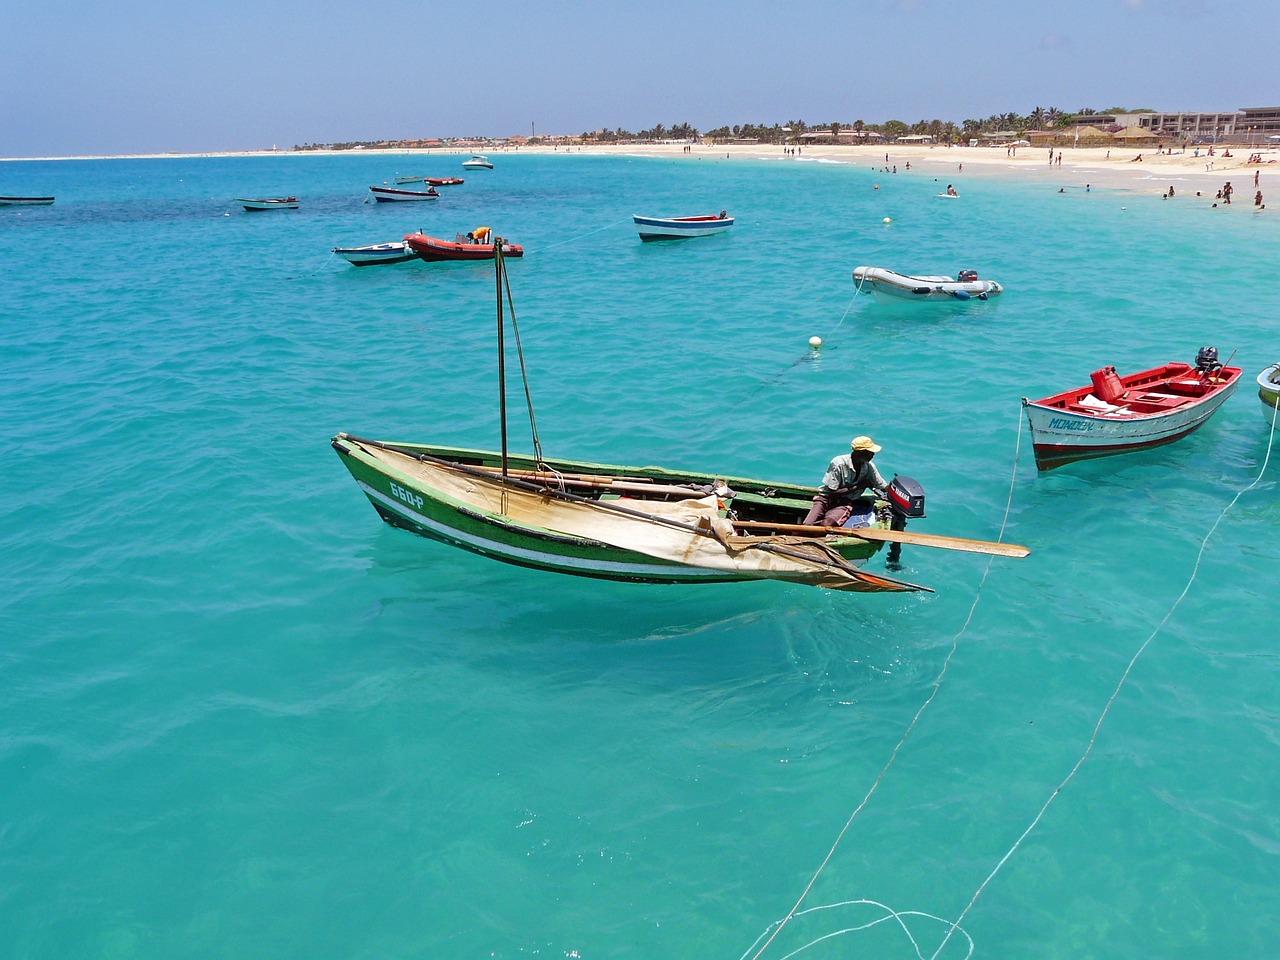 Êtes-vous à la recherche d'un endroit peu fréquenté pour votre voyage au Cap-Vert ? Quand est-il préférable de partir pour avoir le moins de touriste ?